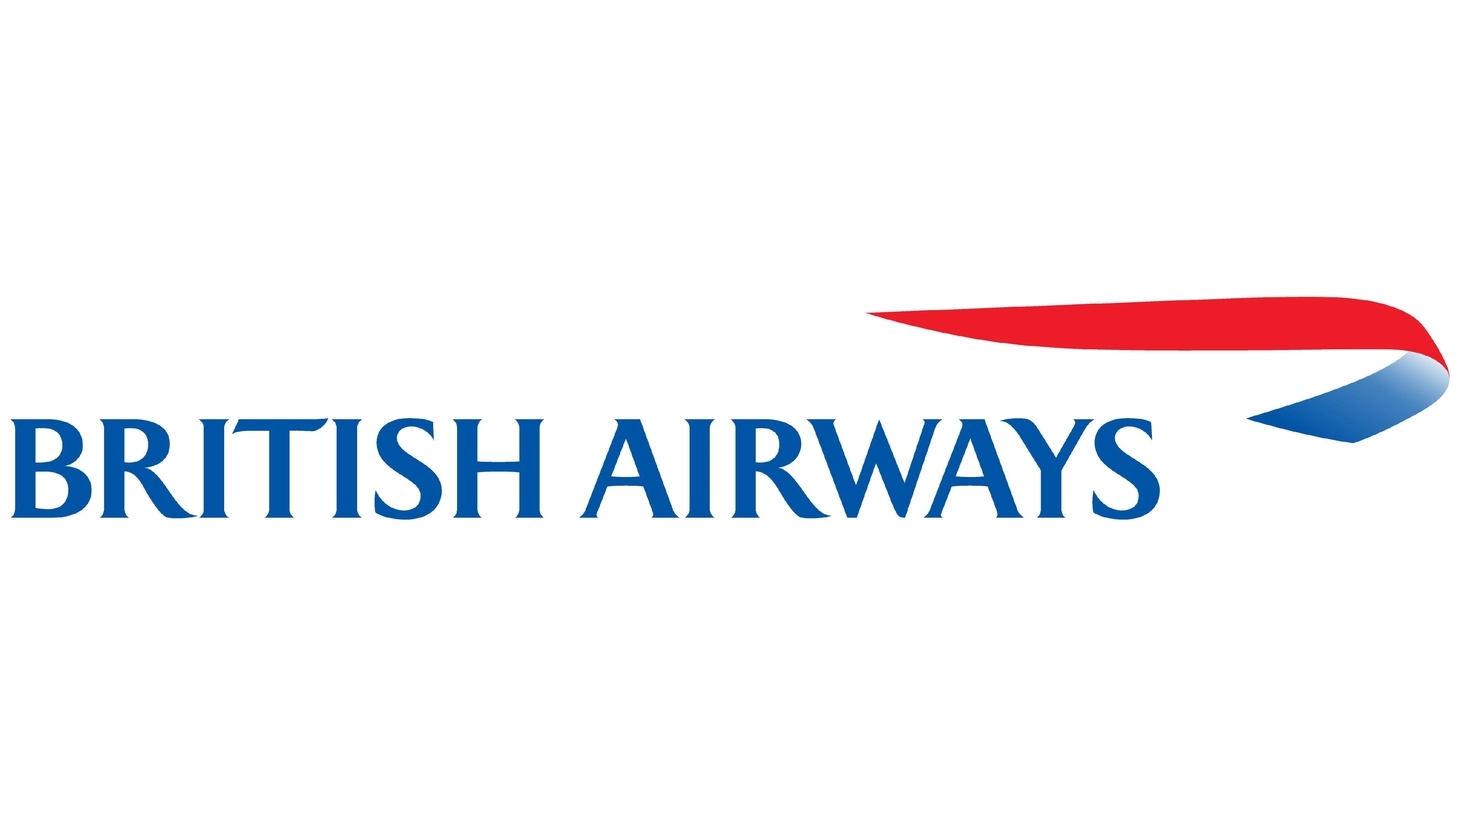 British airways sign 1997 present